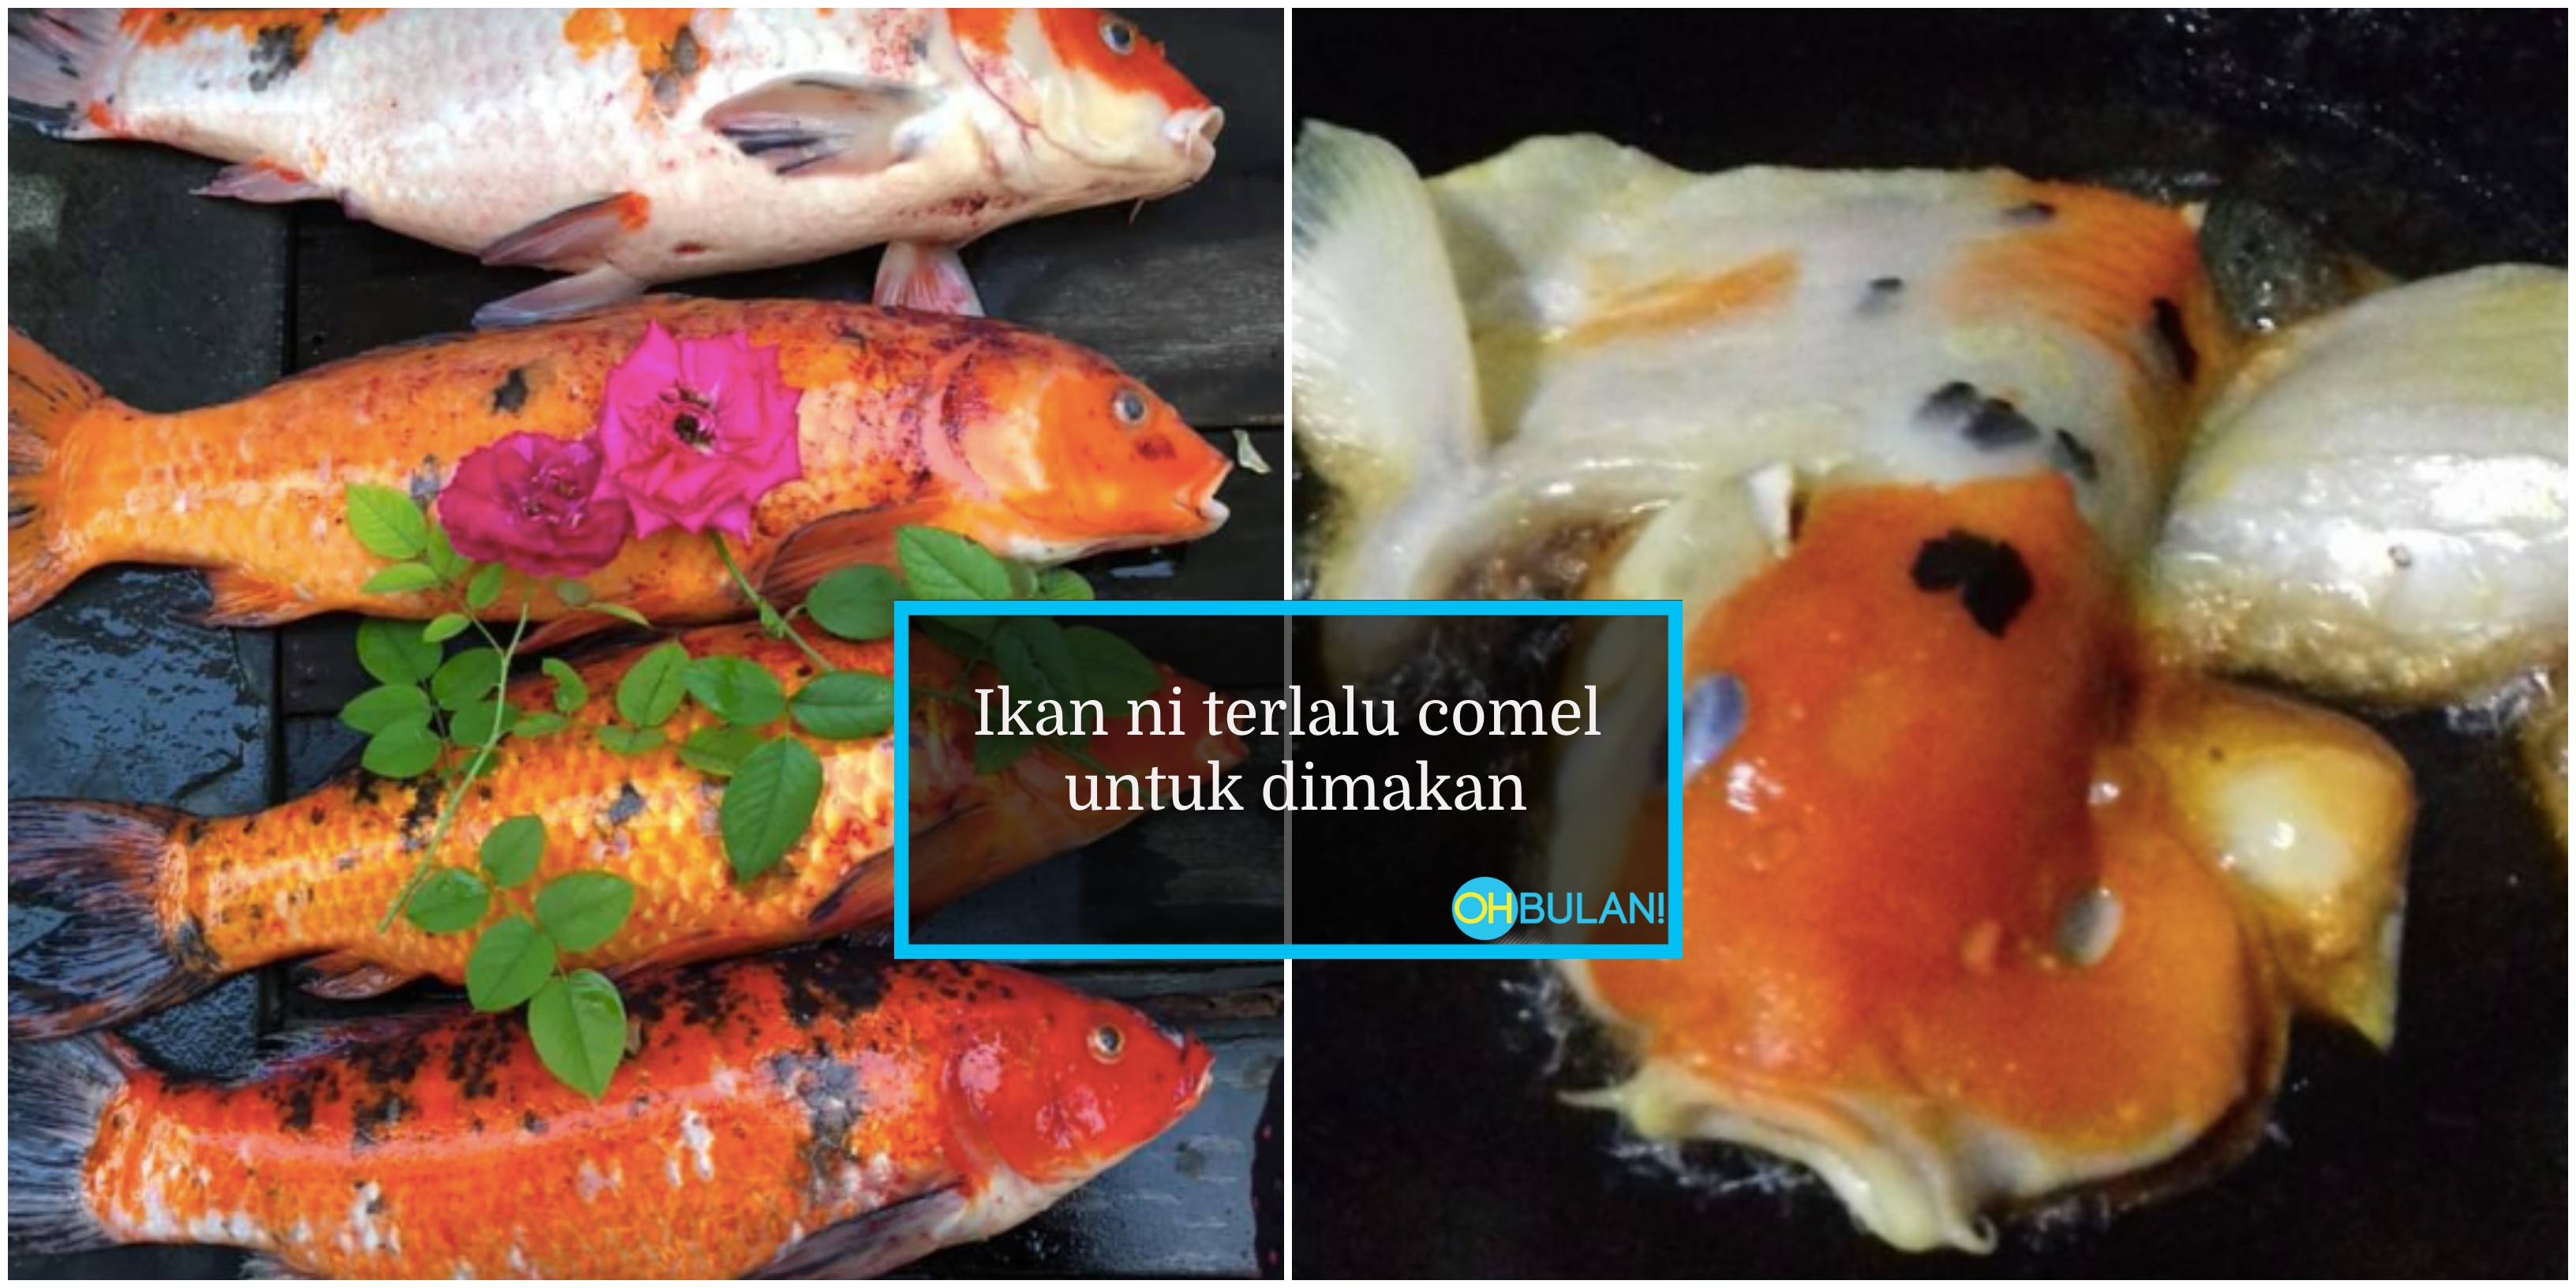 ‘Boleh Ke Makan Ikan Koi?’ – Netizen Kongsi ‘Resipi’ Masak Ikan Koi, Geli Tekak Pun Ada!